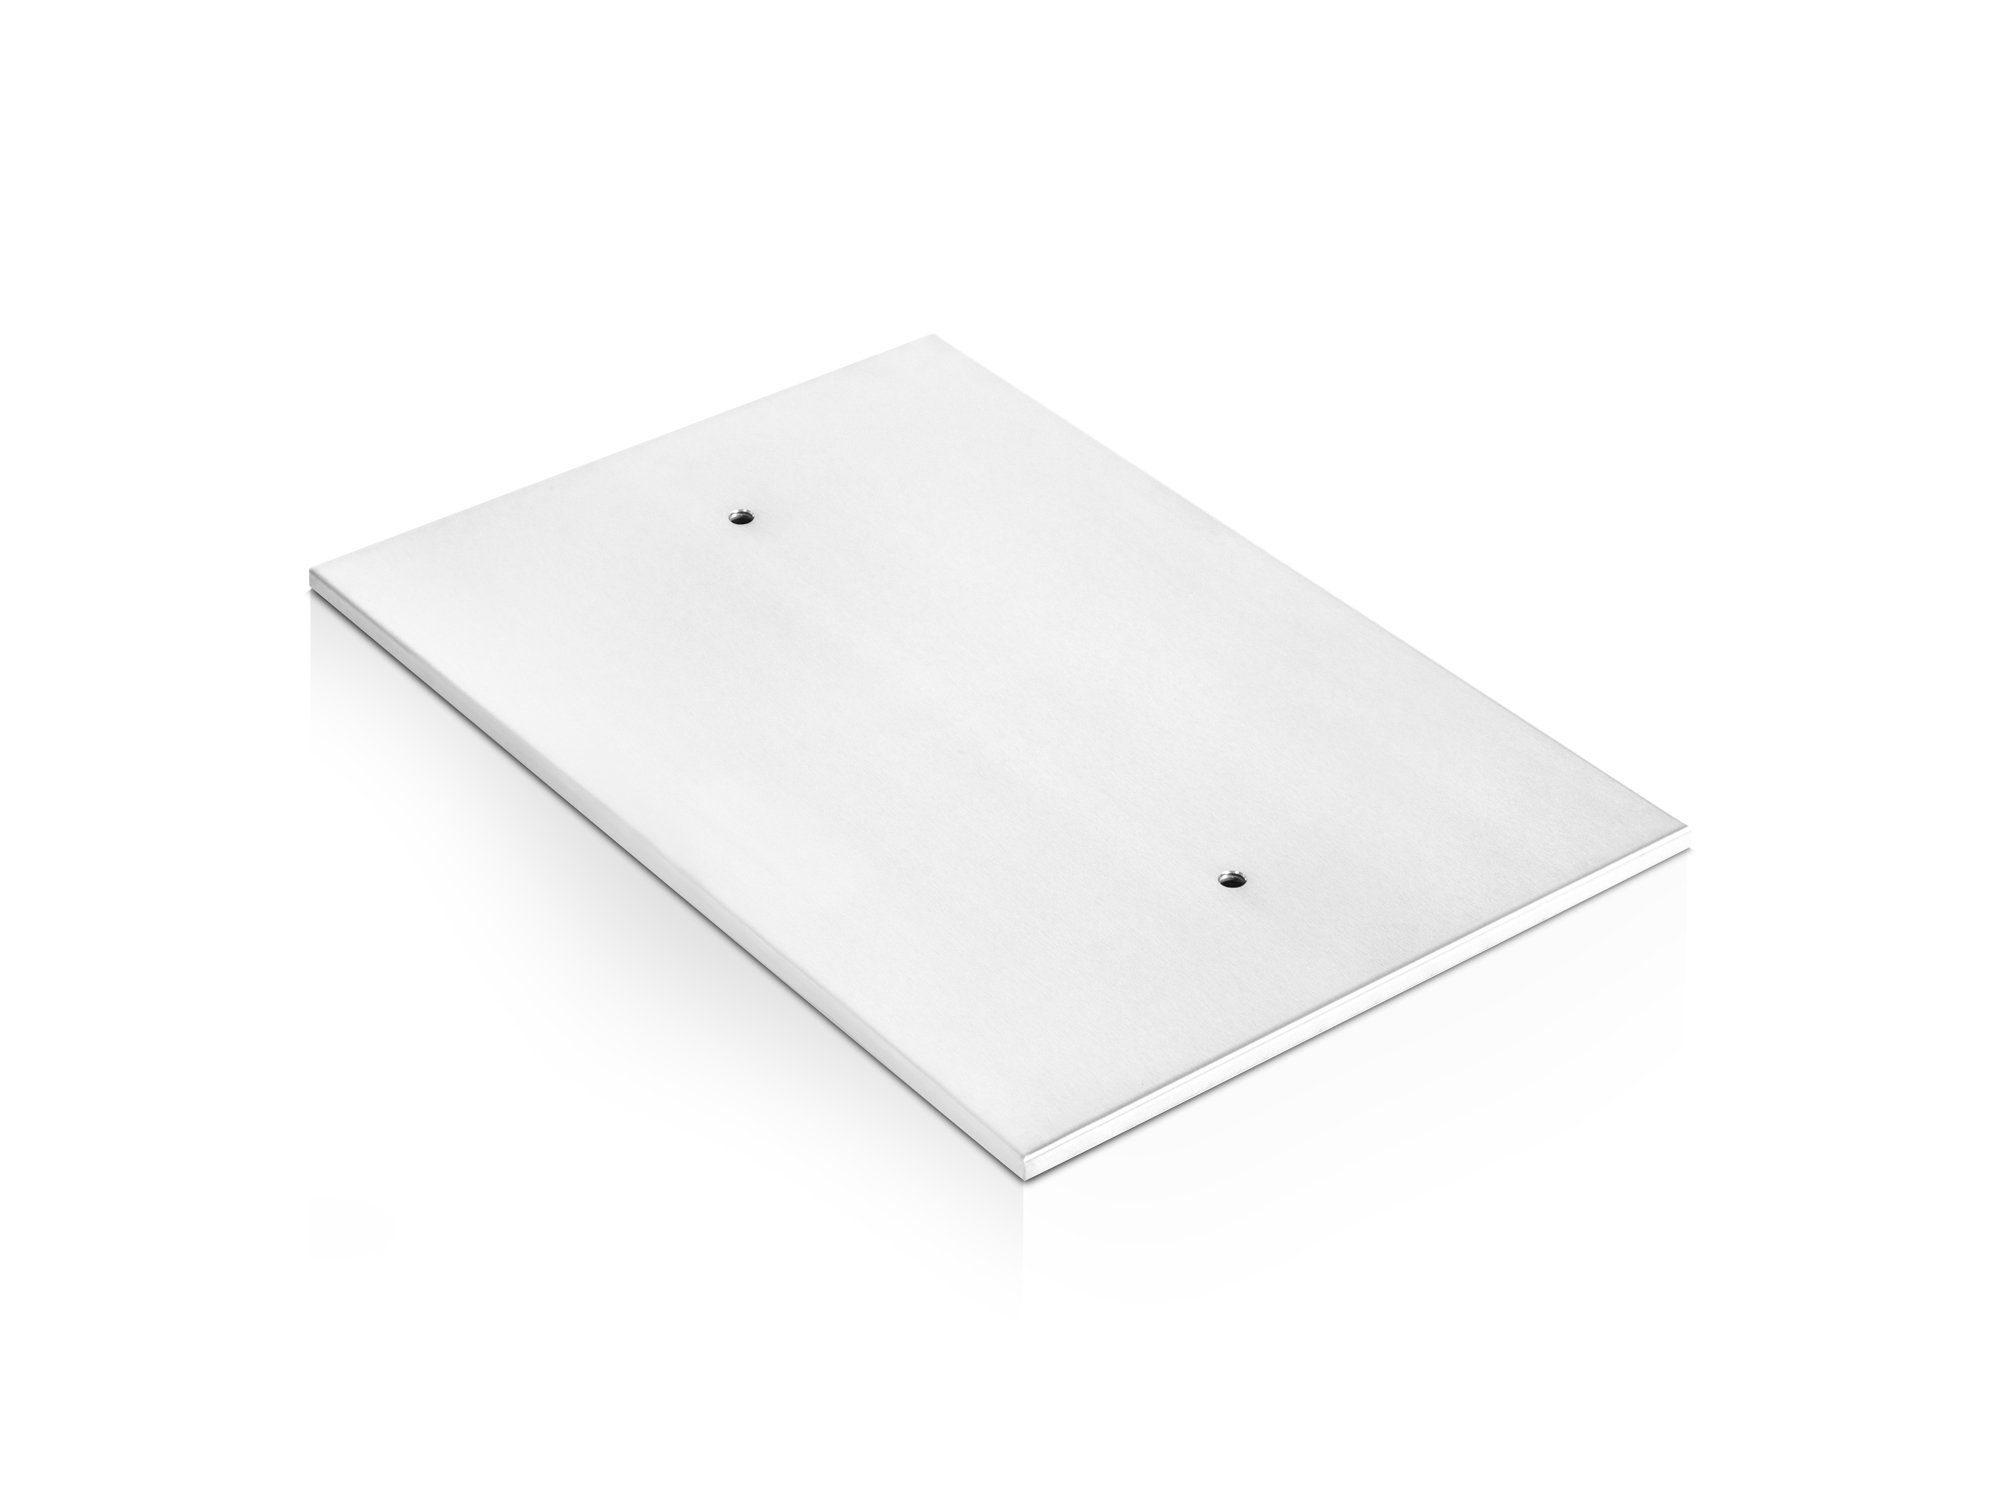 Moebel-Eins Tischgestell Bodenplatte für Esstische, Material Stahl, Bodenplatte für Esstische, Material Stahl Silber | Tische